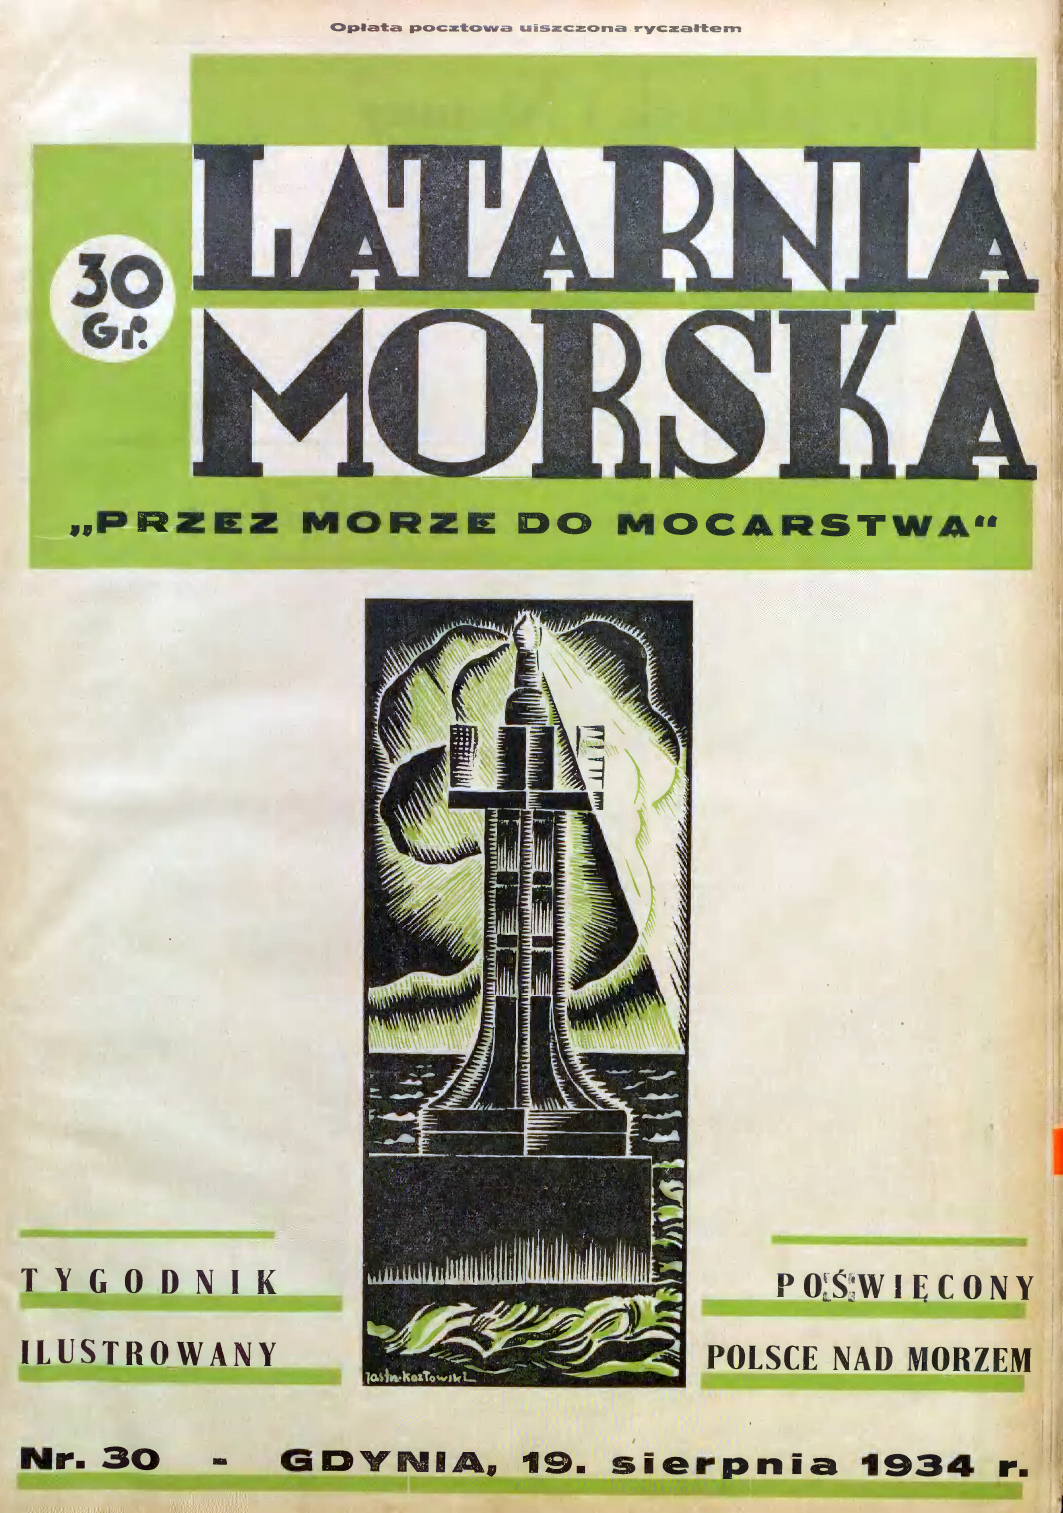 Latarnia Morska: tygodnik ilustrowany poświęcony Polsce nad morzem. – Gdynia : Balto Polak – Zakłady Graficzne i Wydawnicze, 1934, nr 30